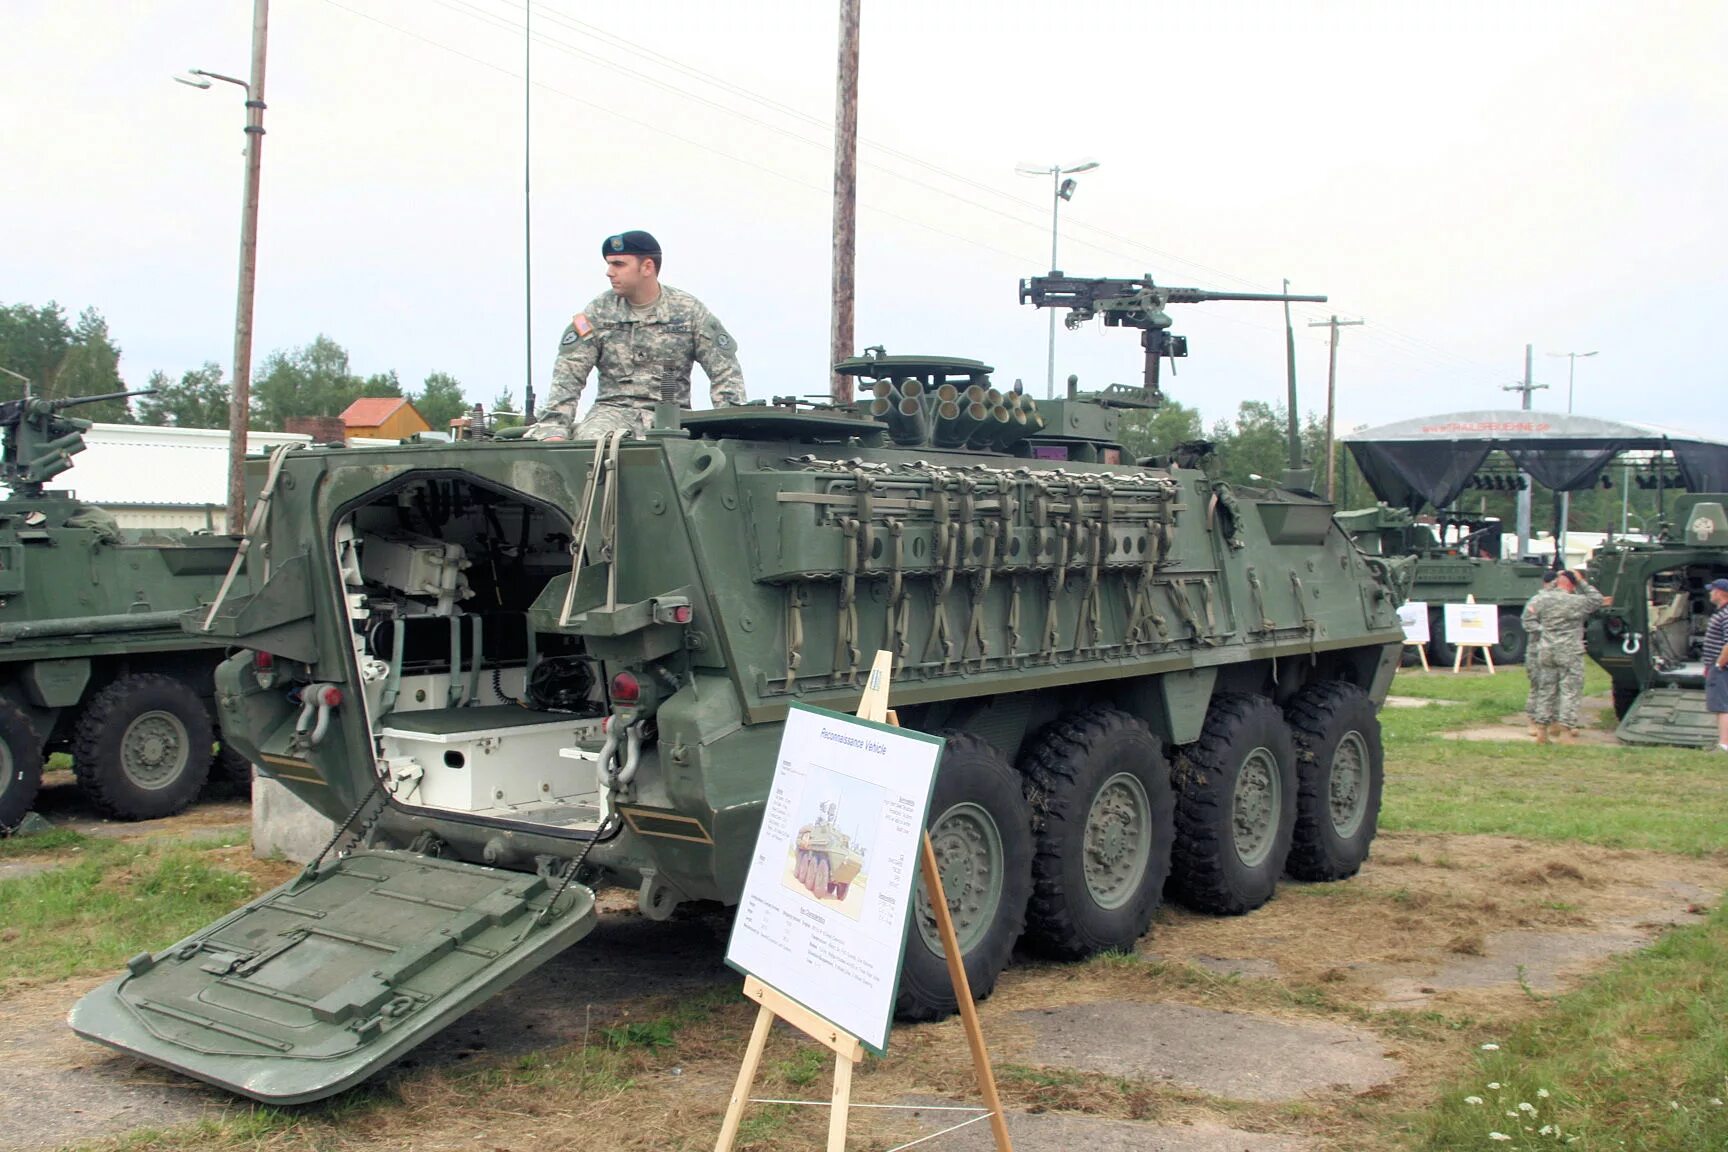 M1127 Stryker RV. M1127 Stryker reconnaissance vehicle. БТР Страйкер m1127 MLRS. Stryker 2005. Сколько страйкер